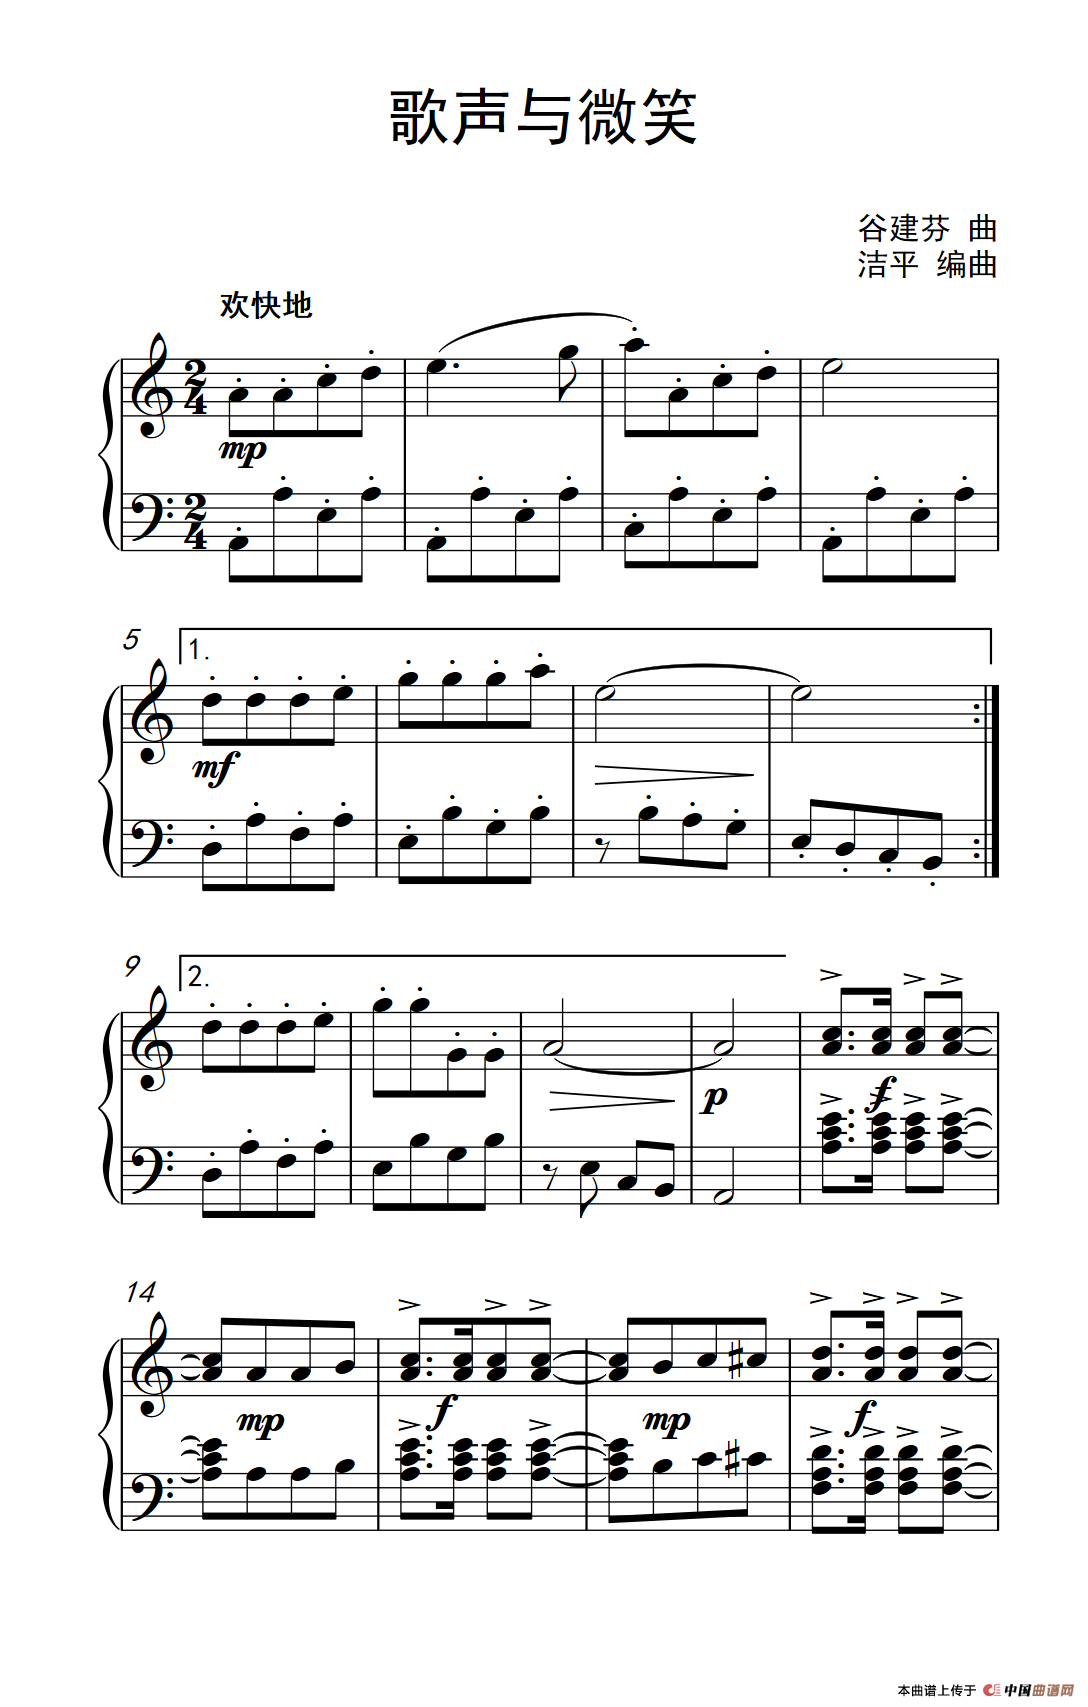 《歌声与微笑》钢琴曲谱图分享